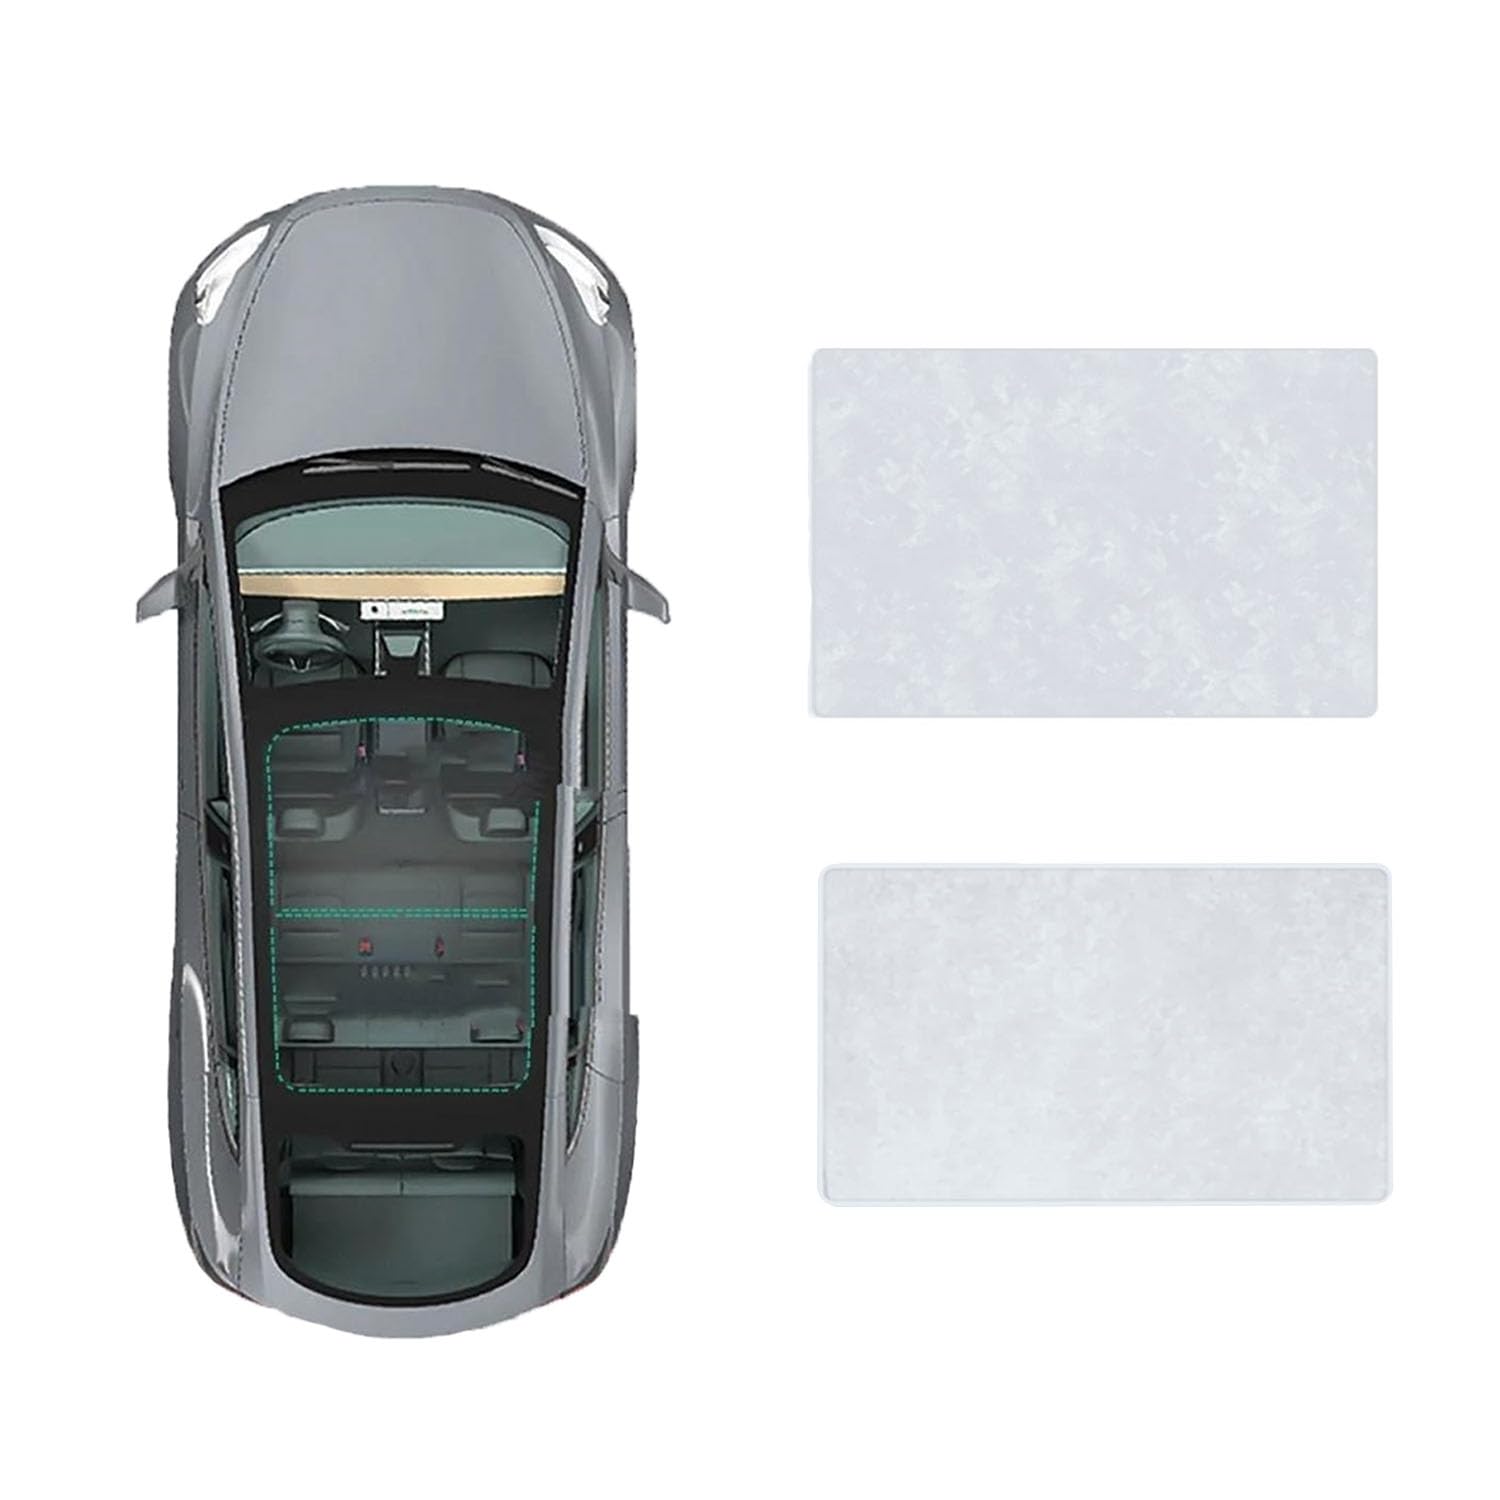 Für Mercedes Benz V-Class 2016- Autofenster Sonnenschutz Dachsonnenschutz Auto Schiebedach Sonnenschirm Dachfenster Rollo Beschattung Zubehör,B-Gray White Suede von JiAYuF